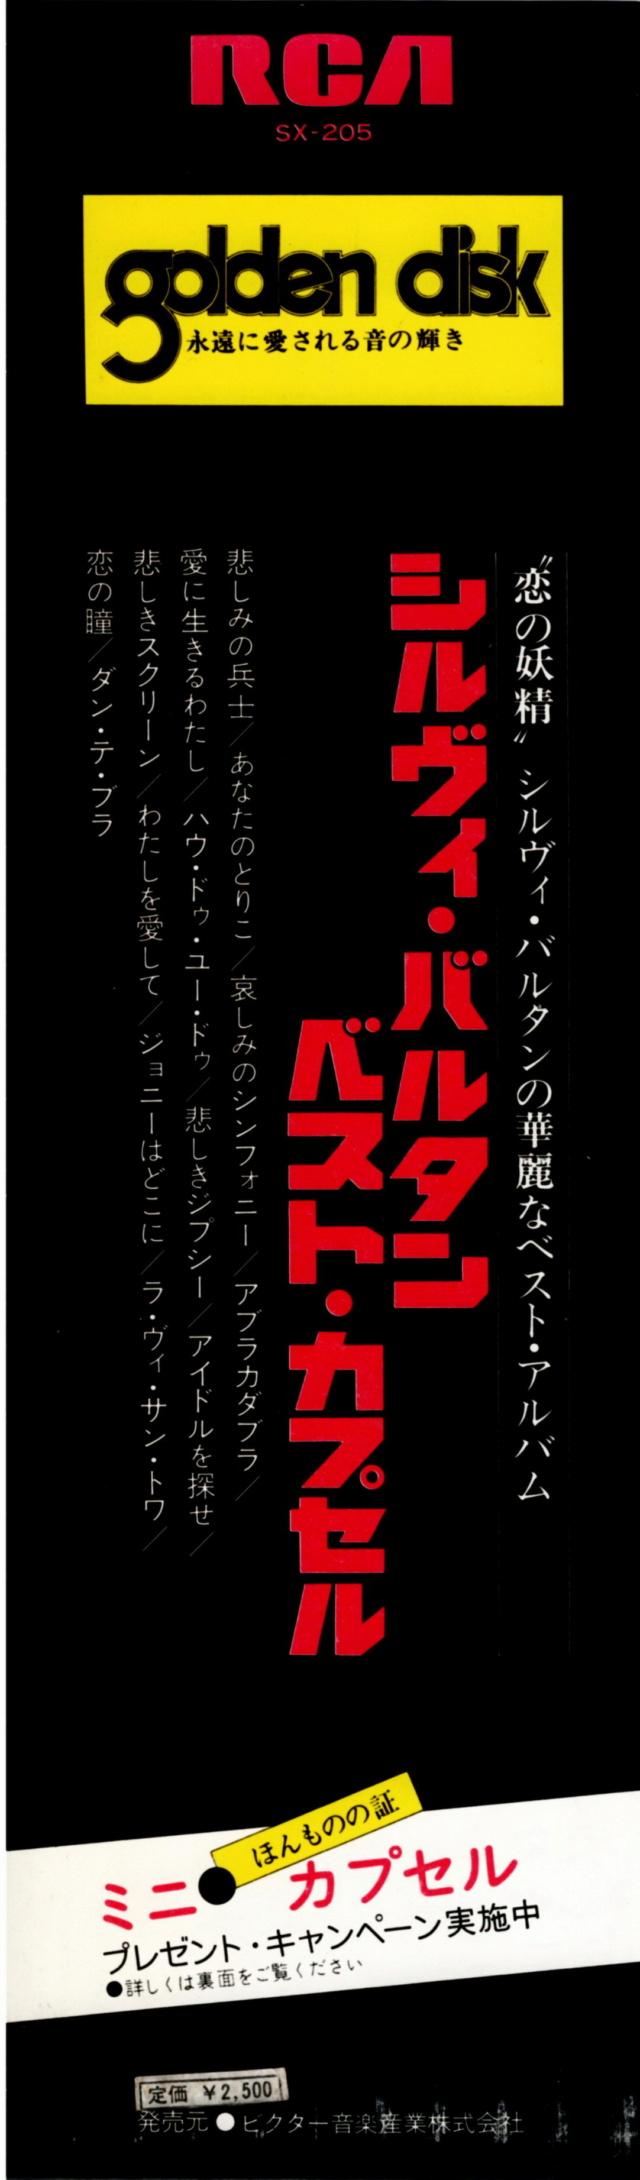 Discographie Japonaise - 4ème partie (33 T COMPILATION) - Page 10 Jpn_3130